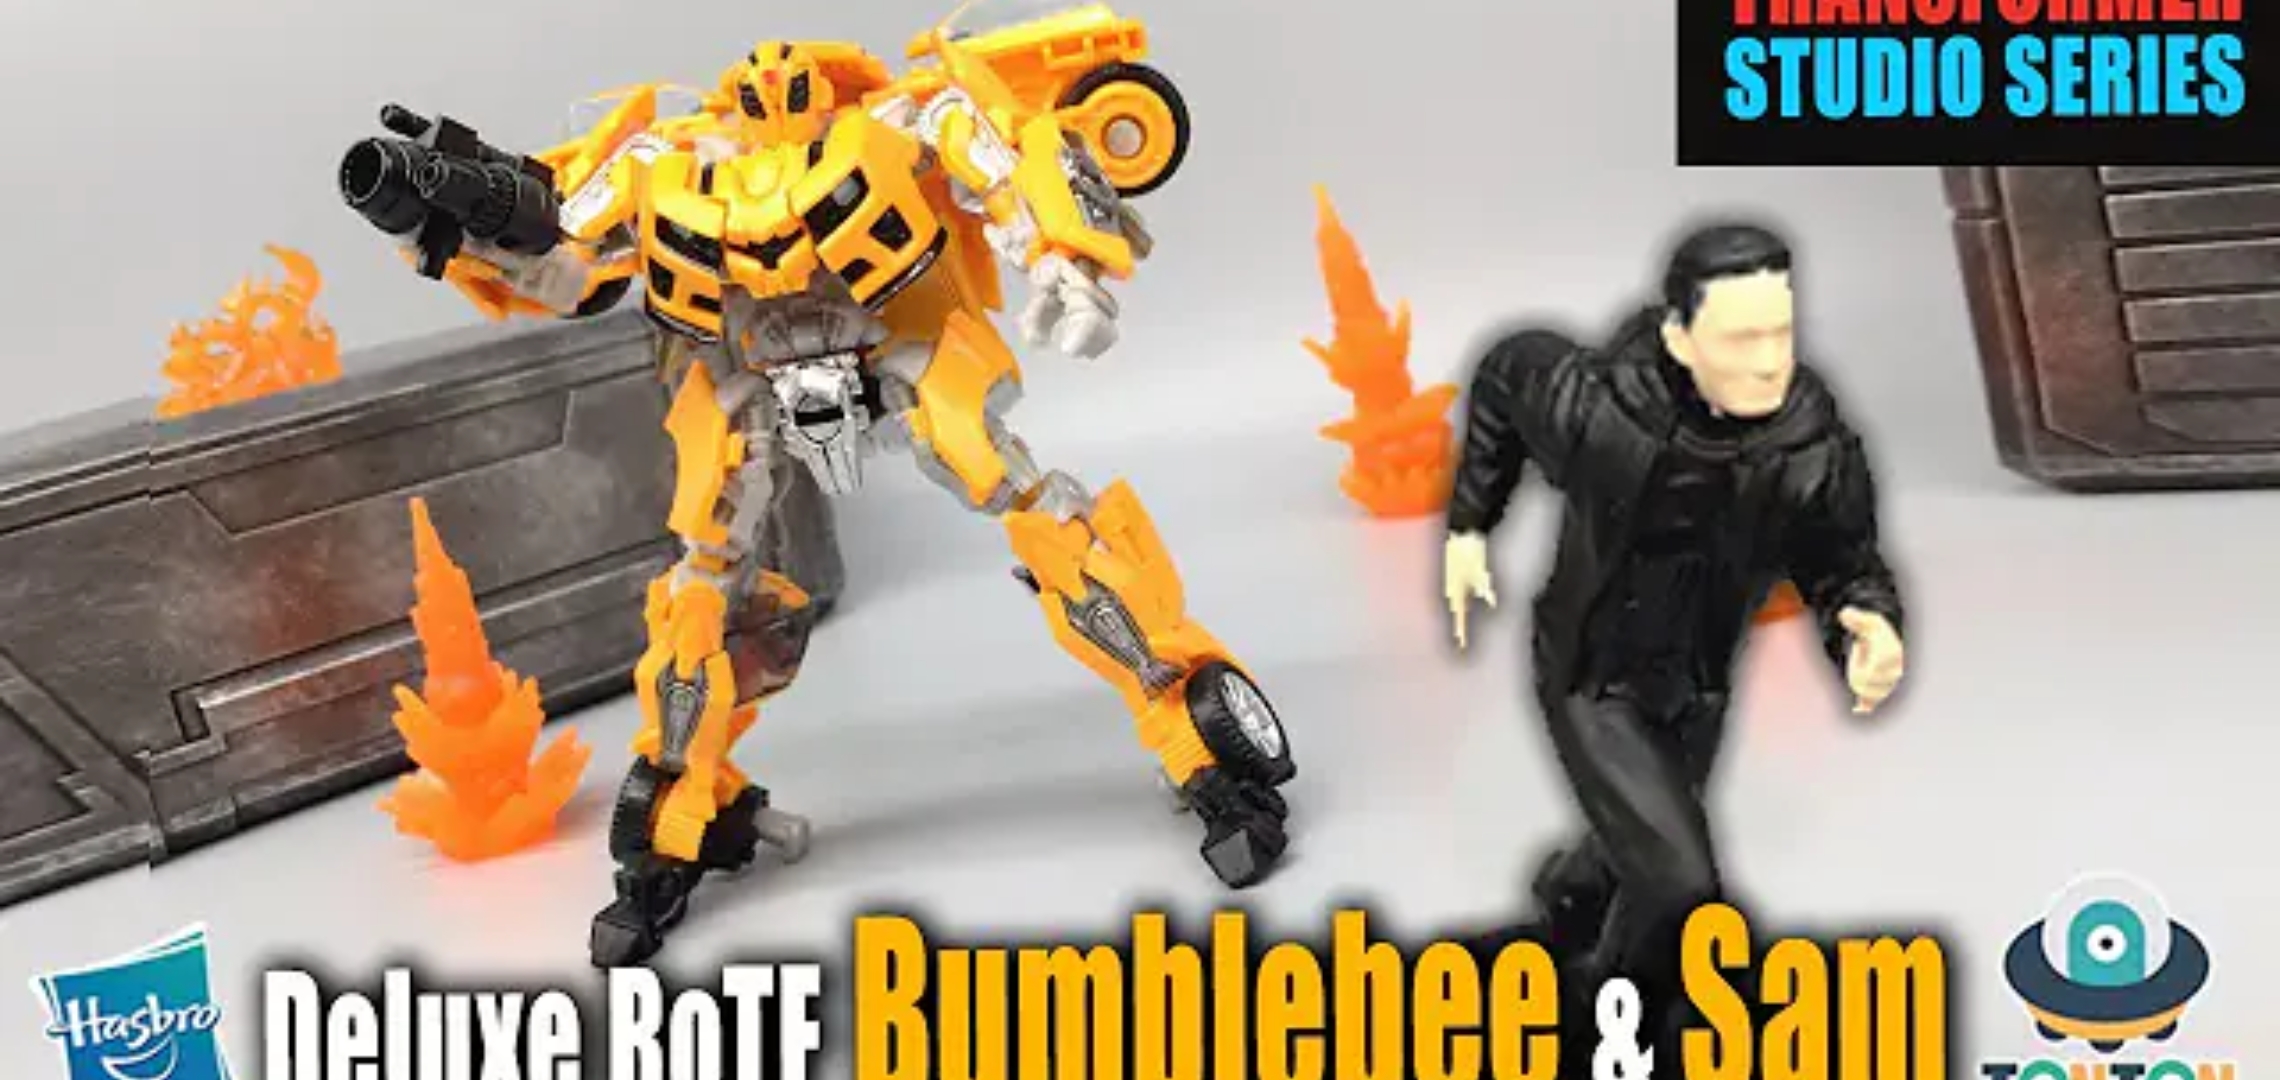 Transformers Revenge of the Fallen Buzzworthy Bumblebee Studio Series 777532 